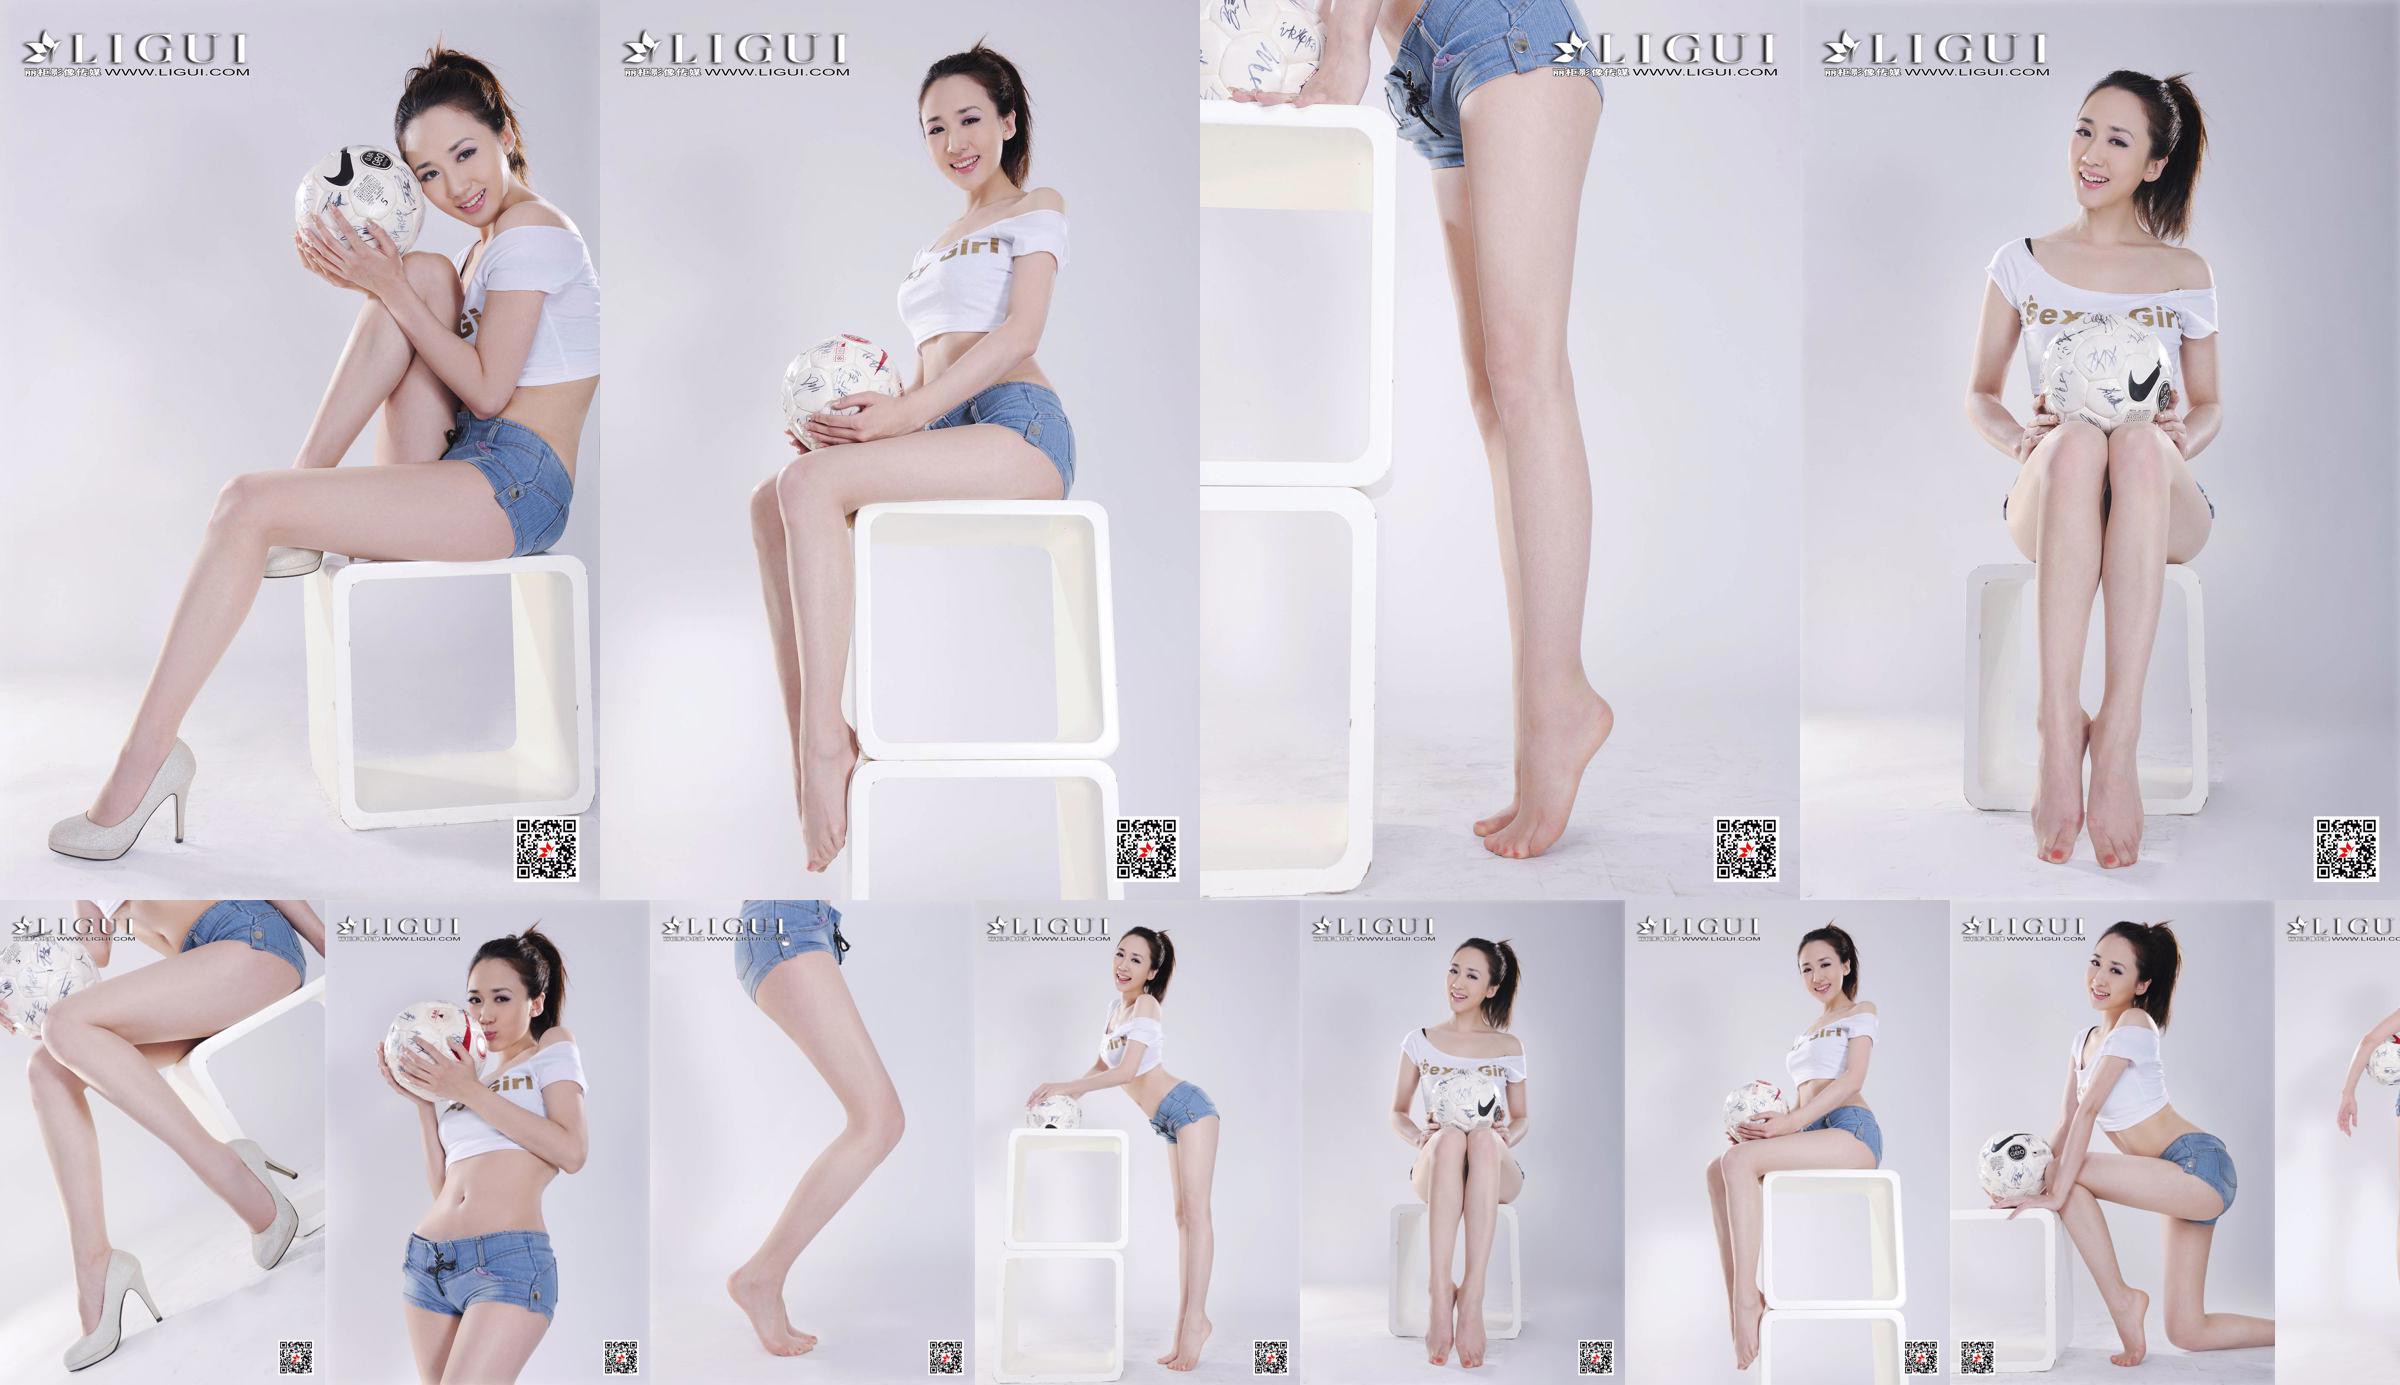 Model Qiu Chen "Super Short Hot Pants Football Girl" [LIGUI] No.5ba3de Page 2